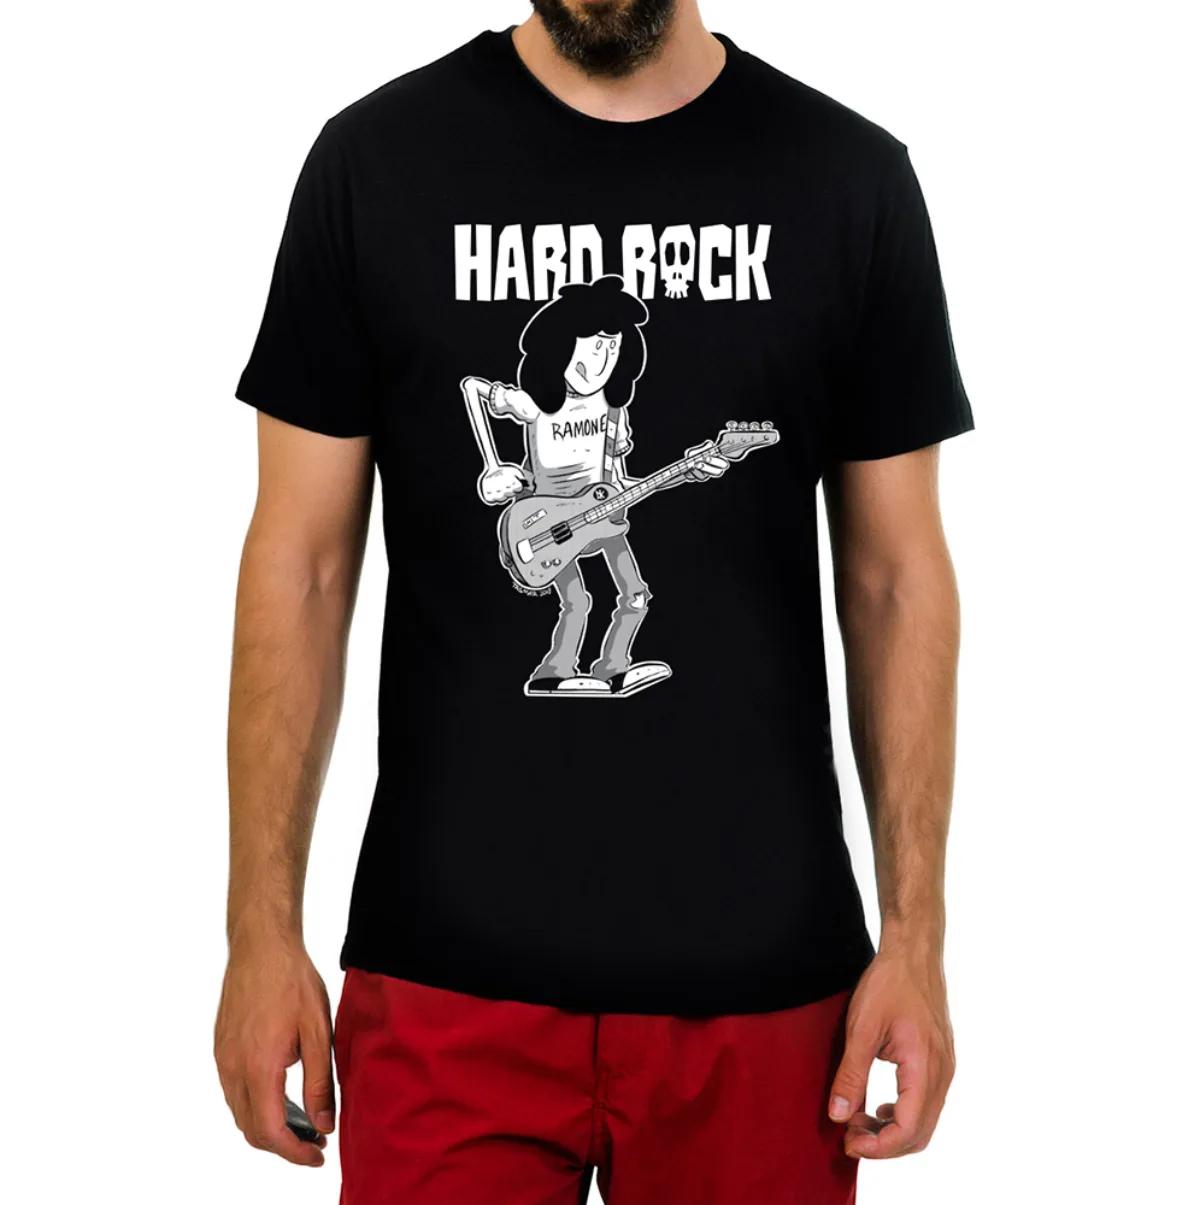 Hard Rock t-shirt 2018